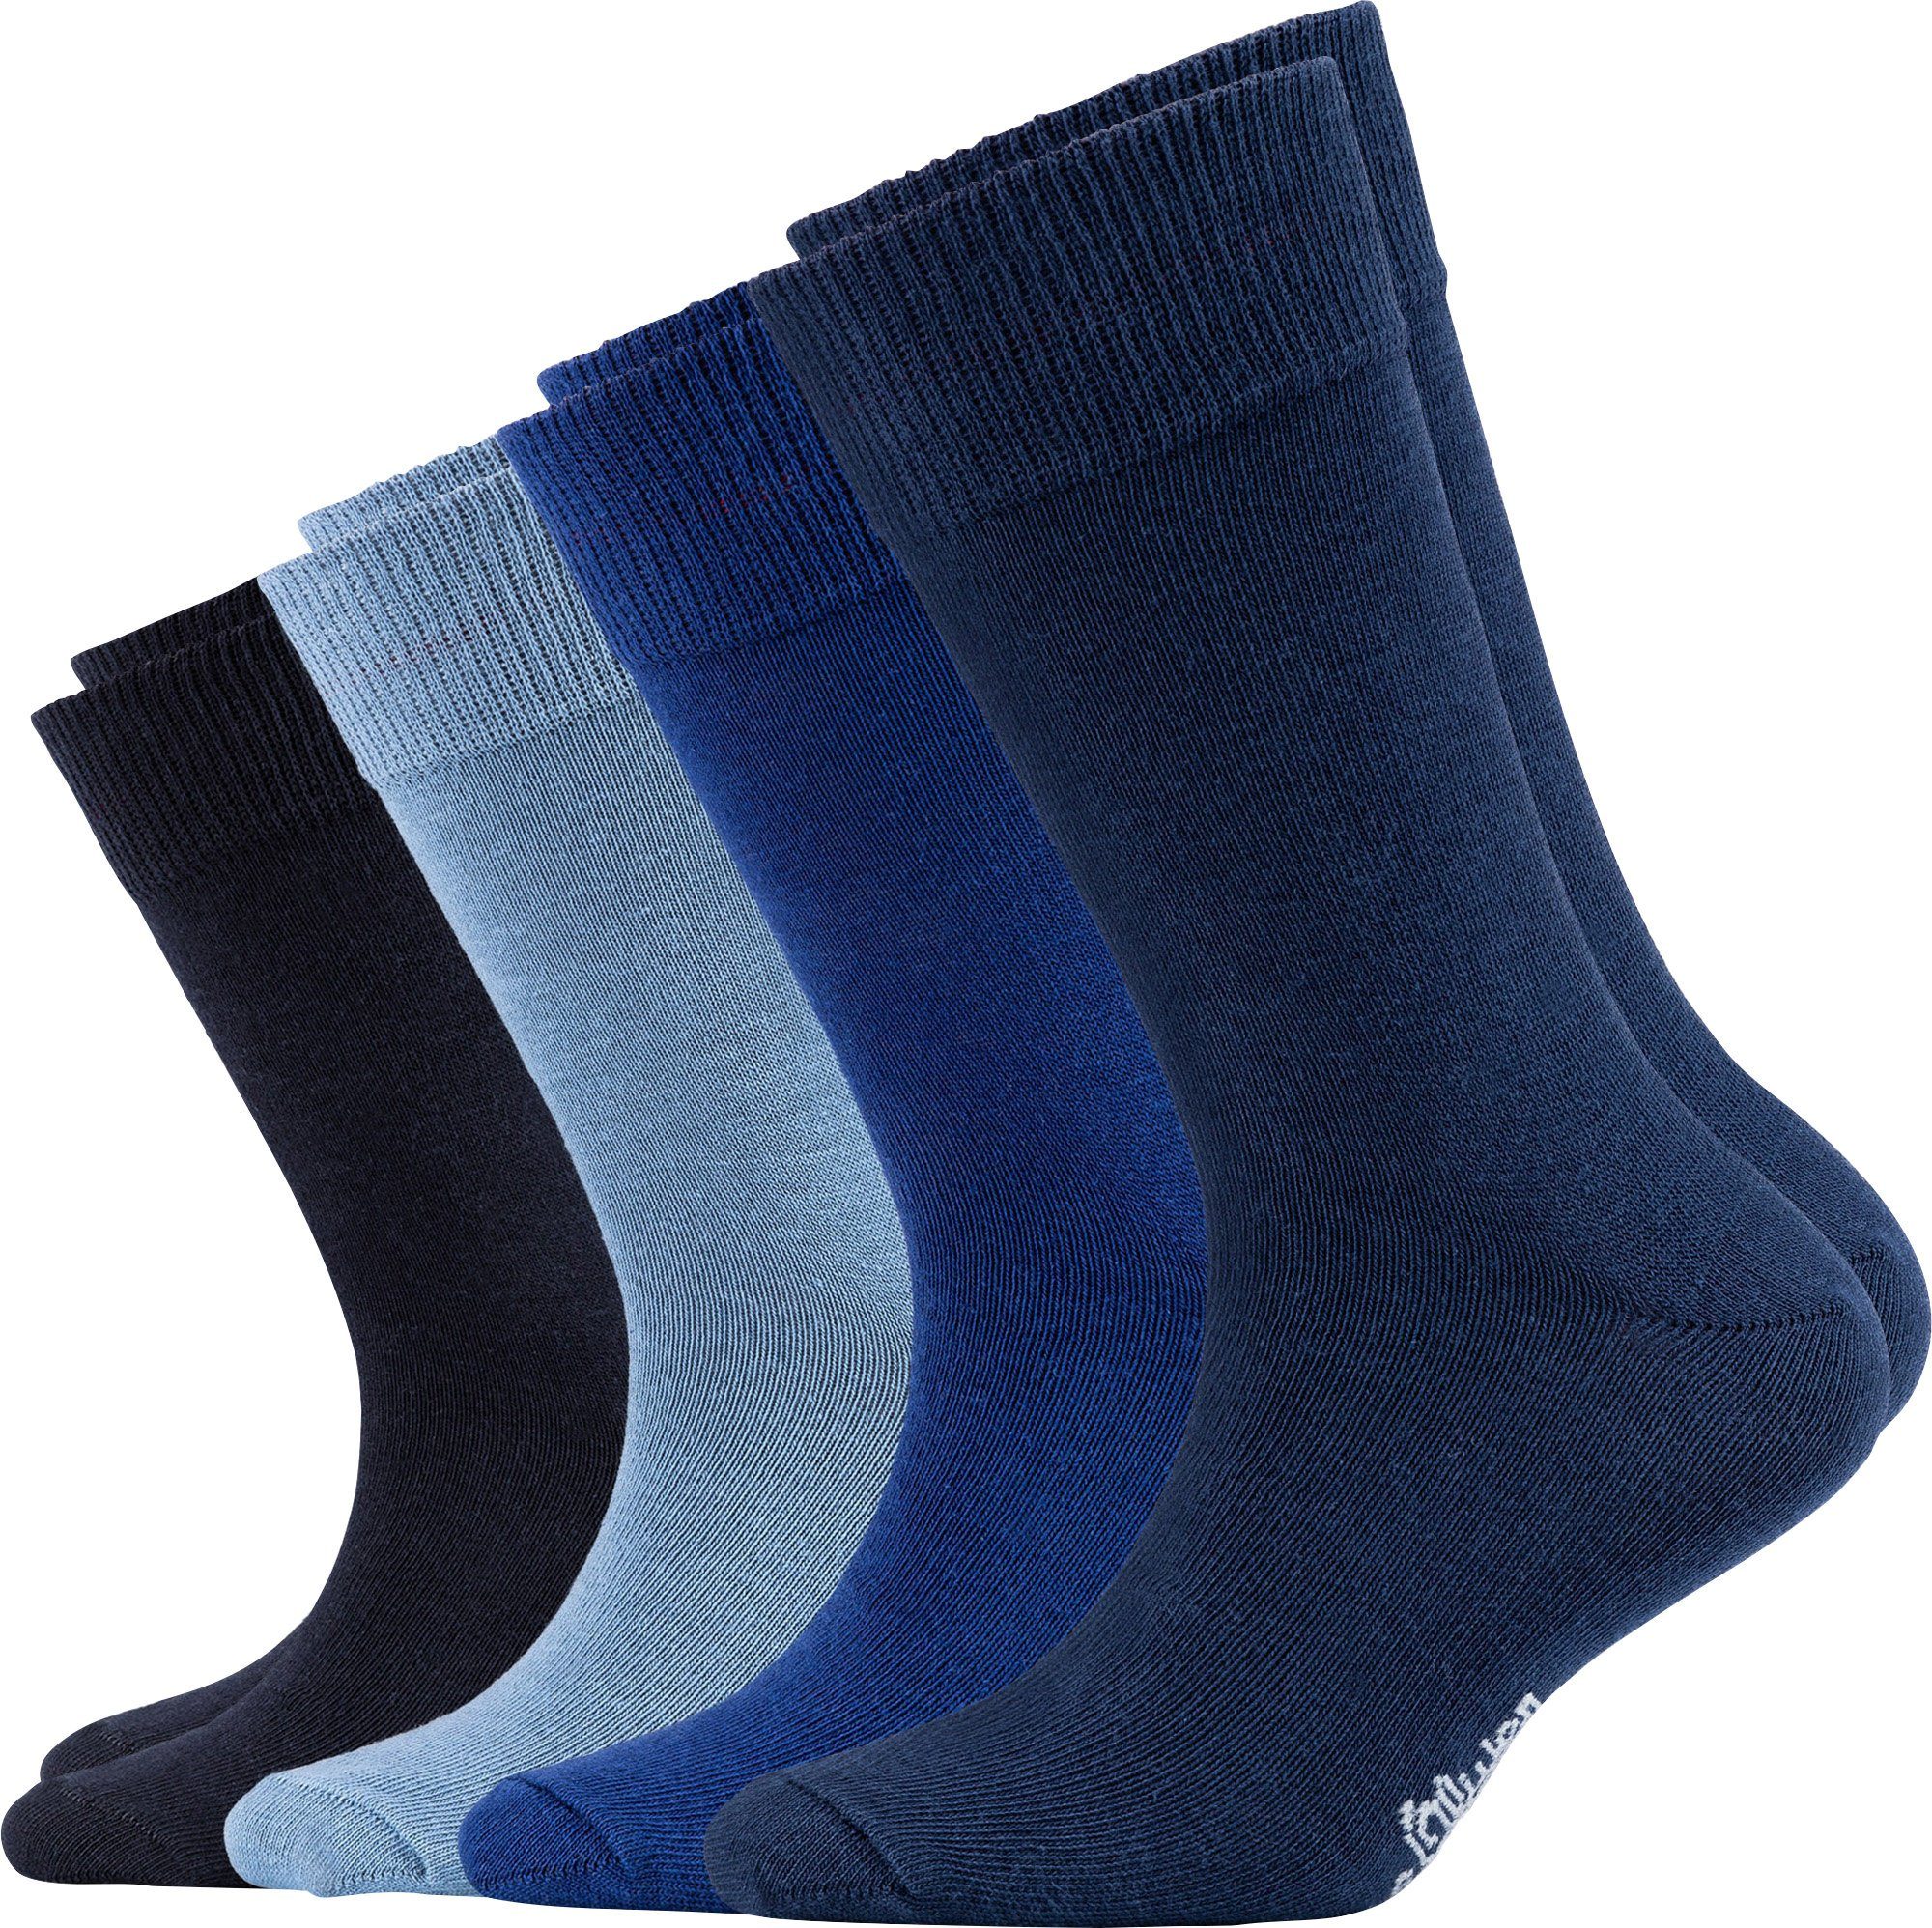 Socken Paar s.Oliver 4 marine/blau Uni Kinder-Socken